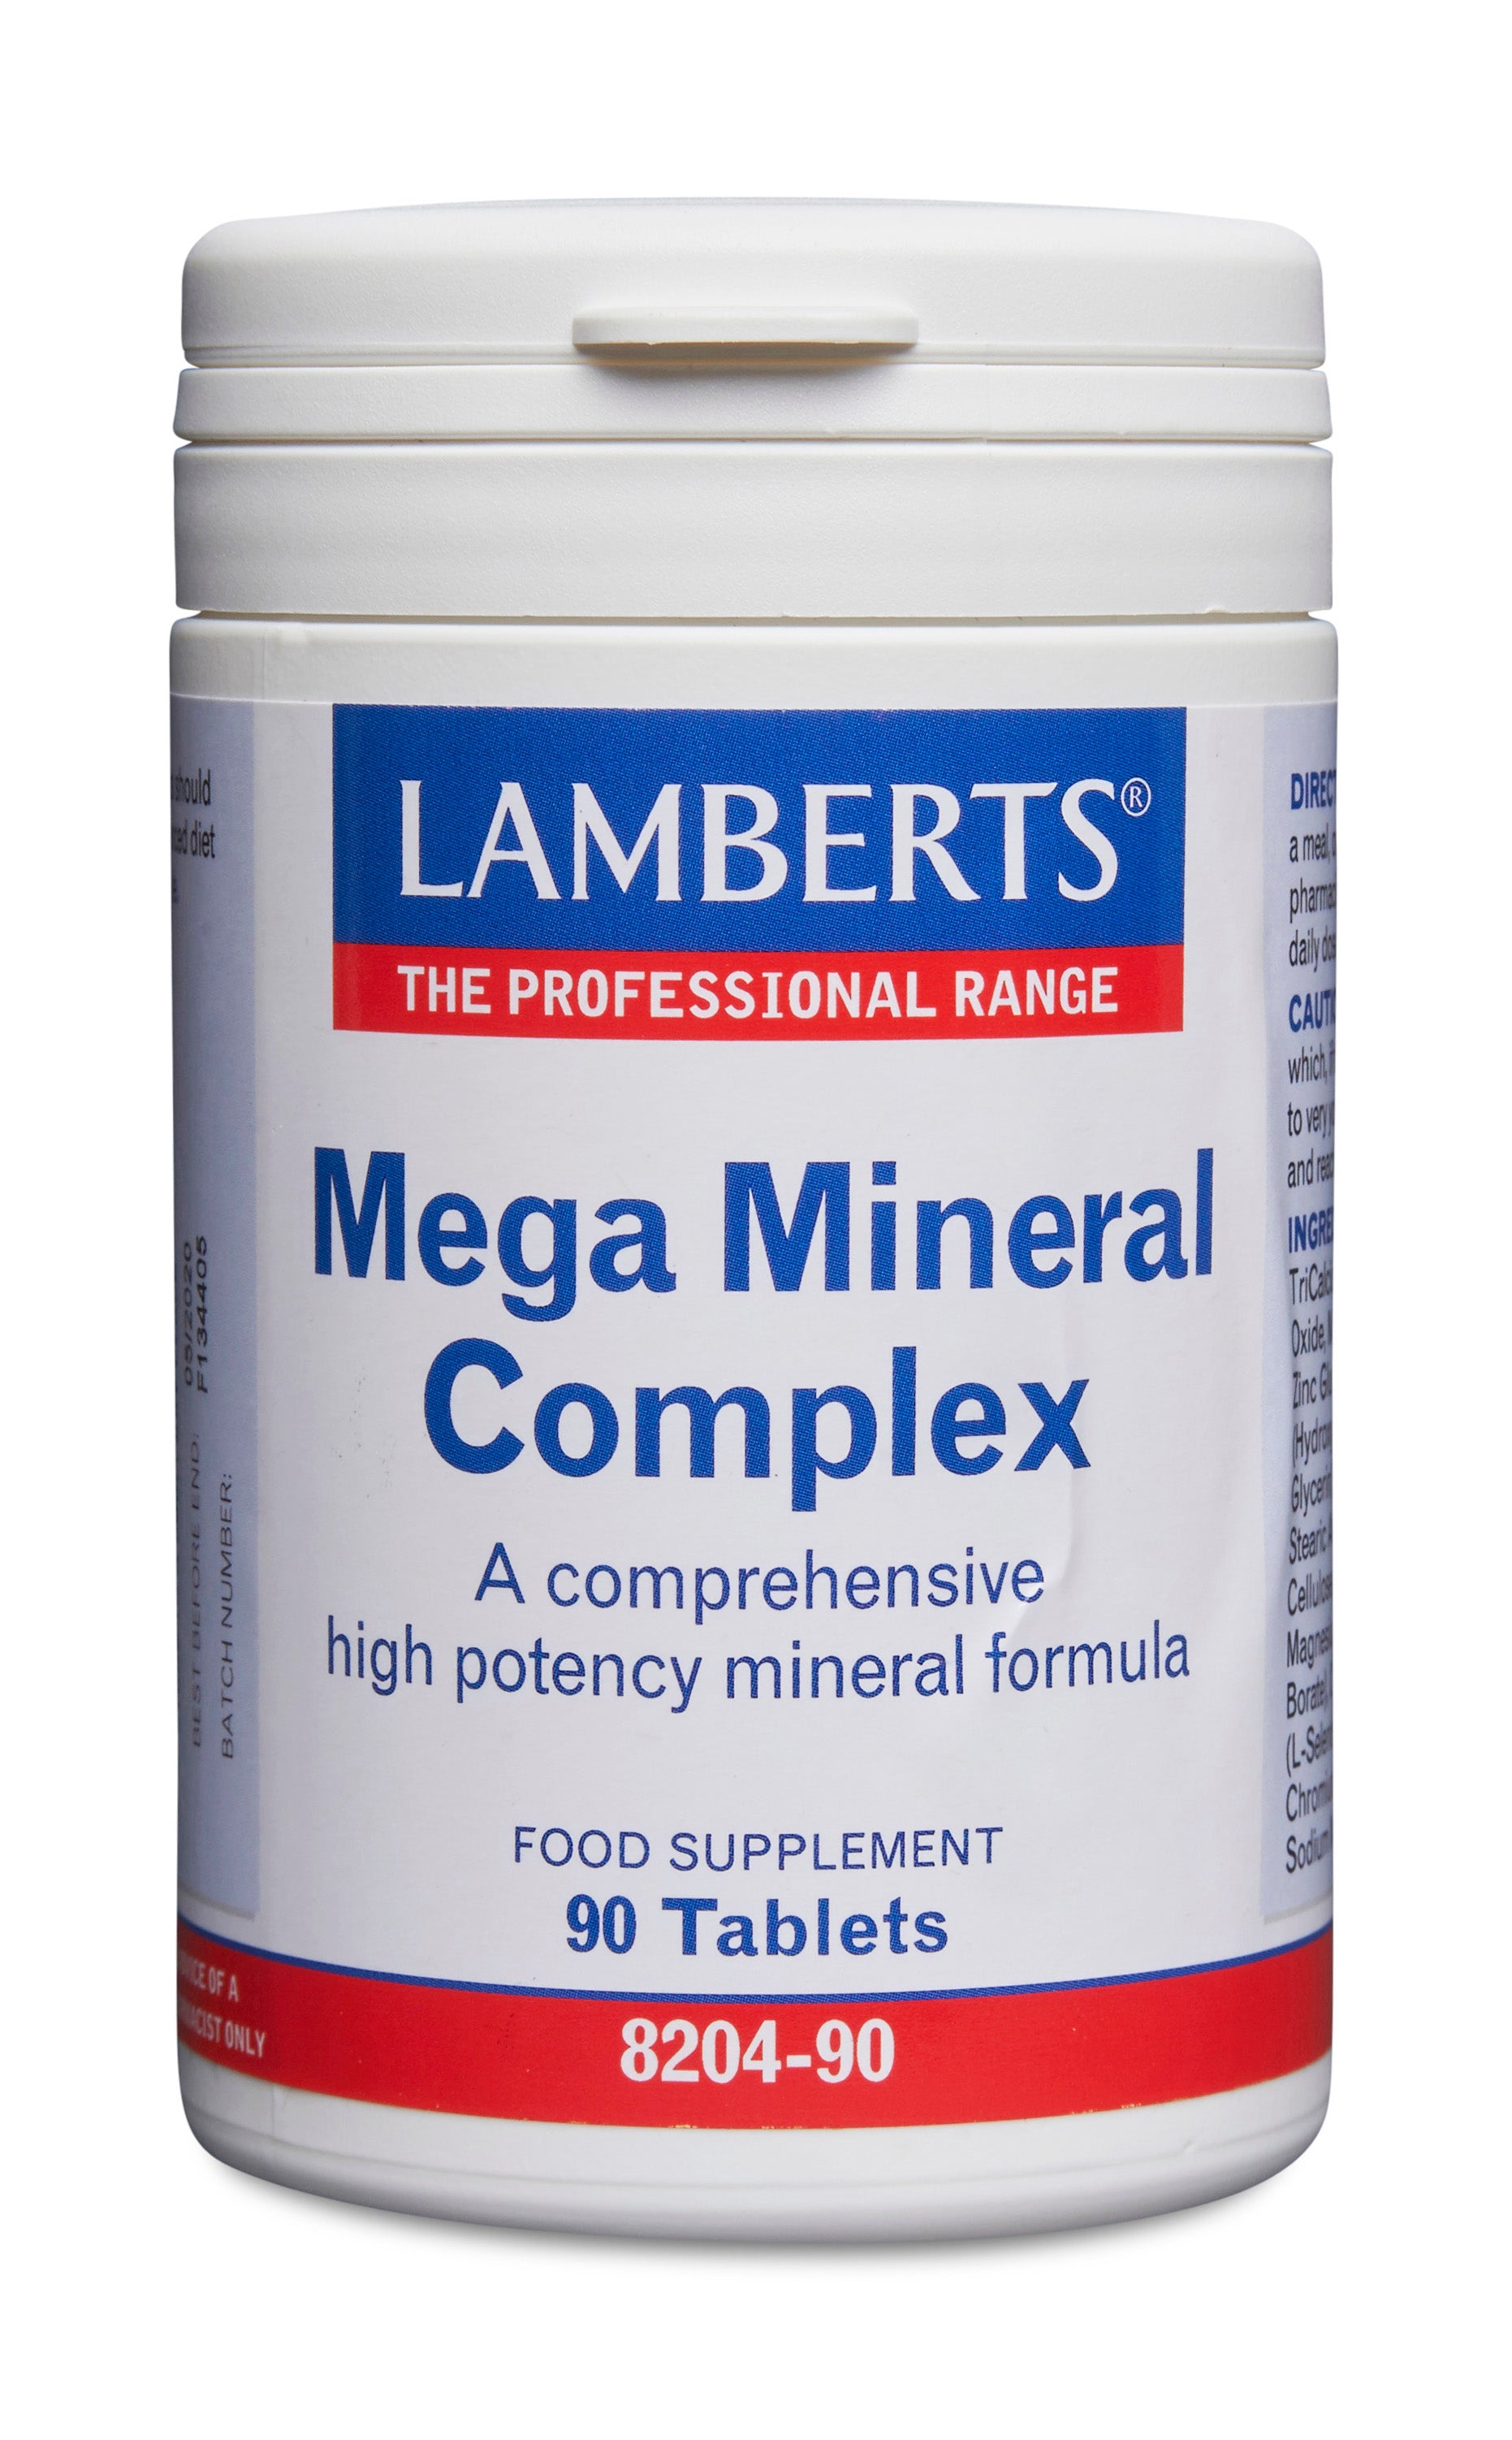 lamberts - 90 Tablets Mega Mineral Complex